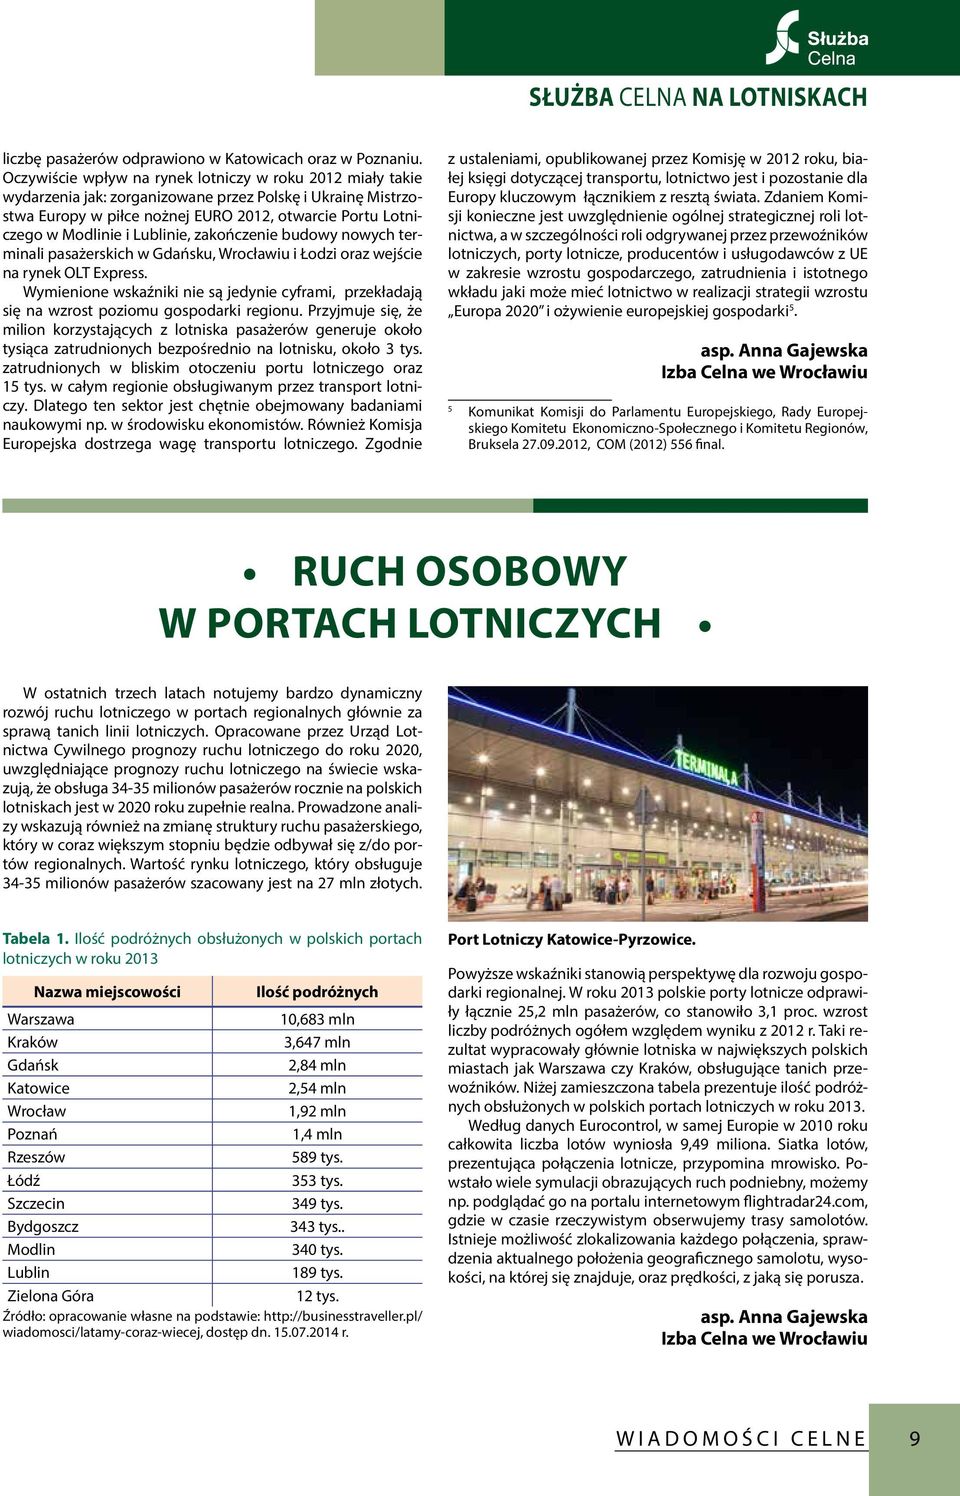 Lublinie, zakończenie budowy nowych terminali pasażerskich w Gdańsku, Wrocławiu i Łodzi oraz wejście na rynek OLT Express.